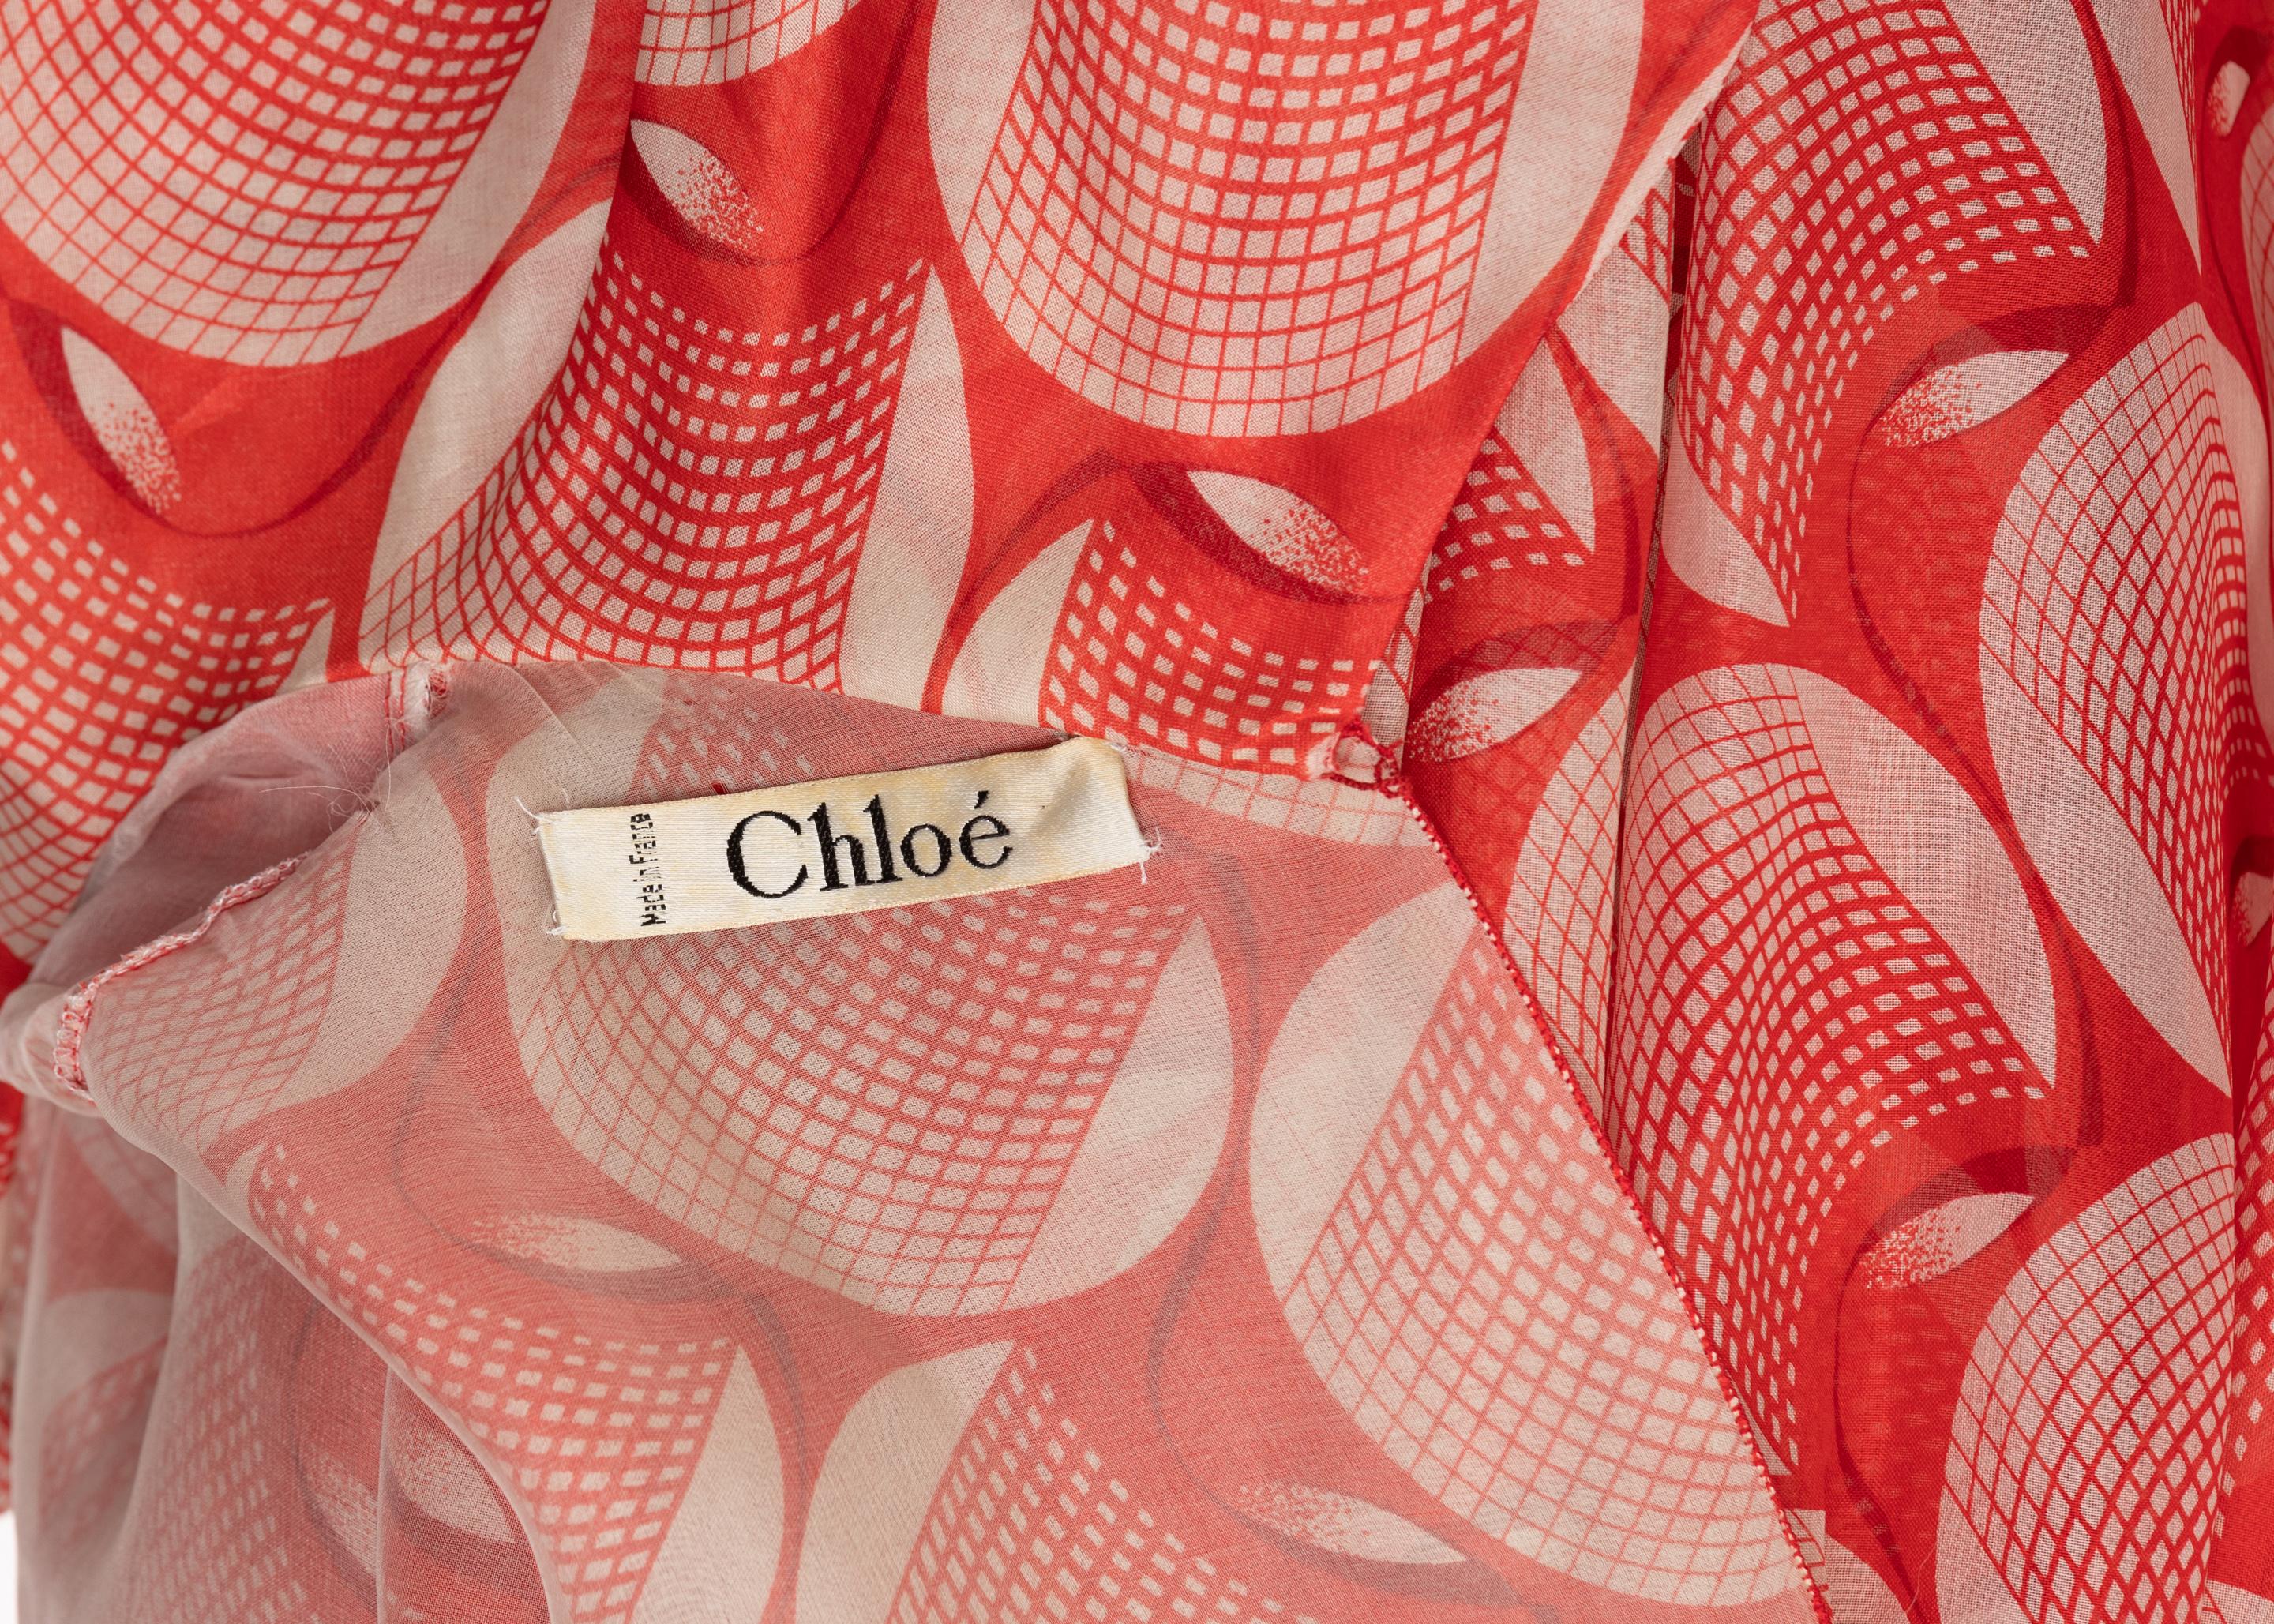 Chloe Karl Lagerfeld Red White Printed Silk Dress Runway 1982 5